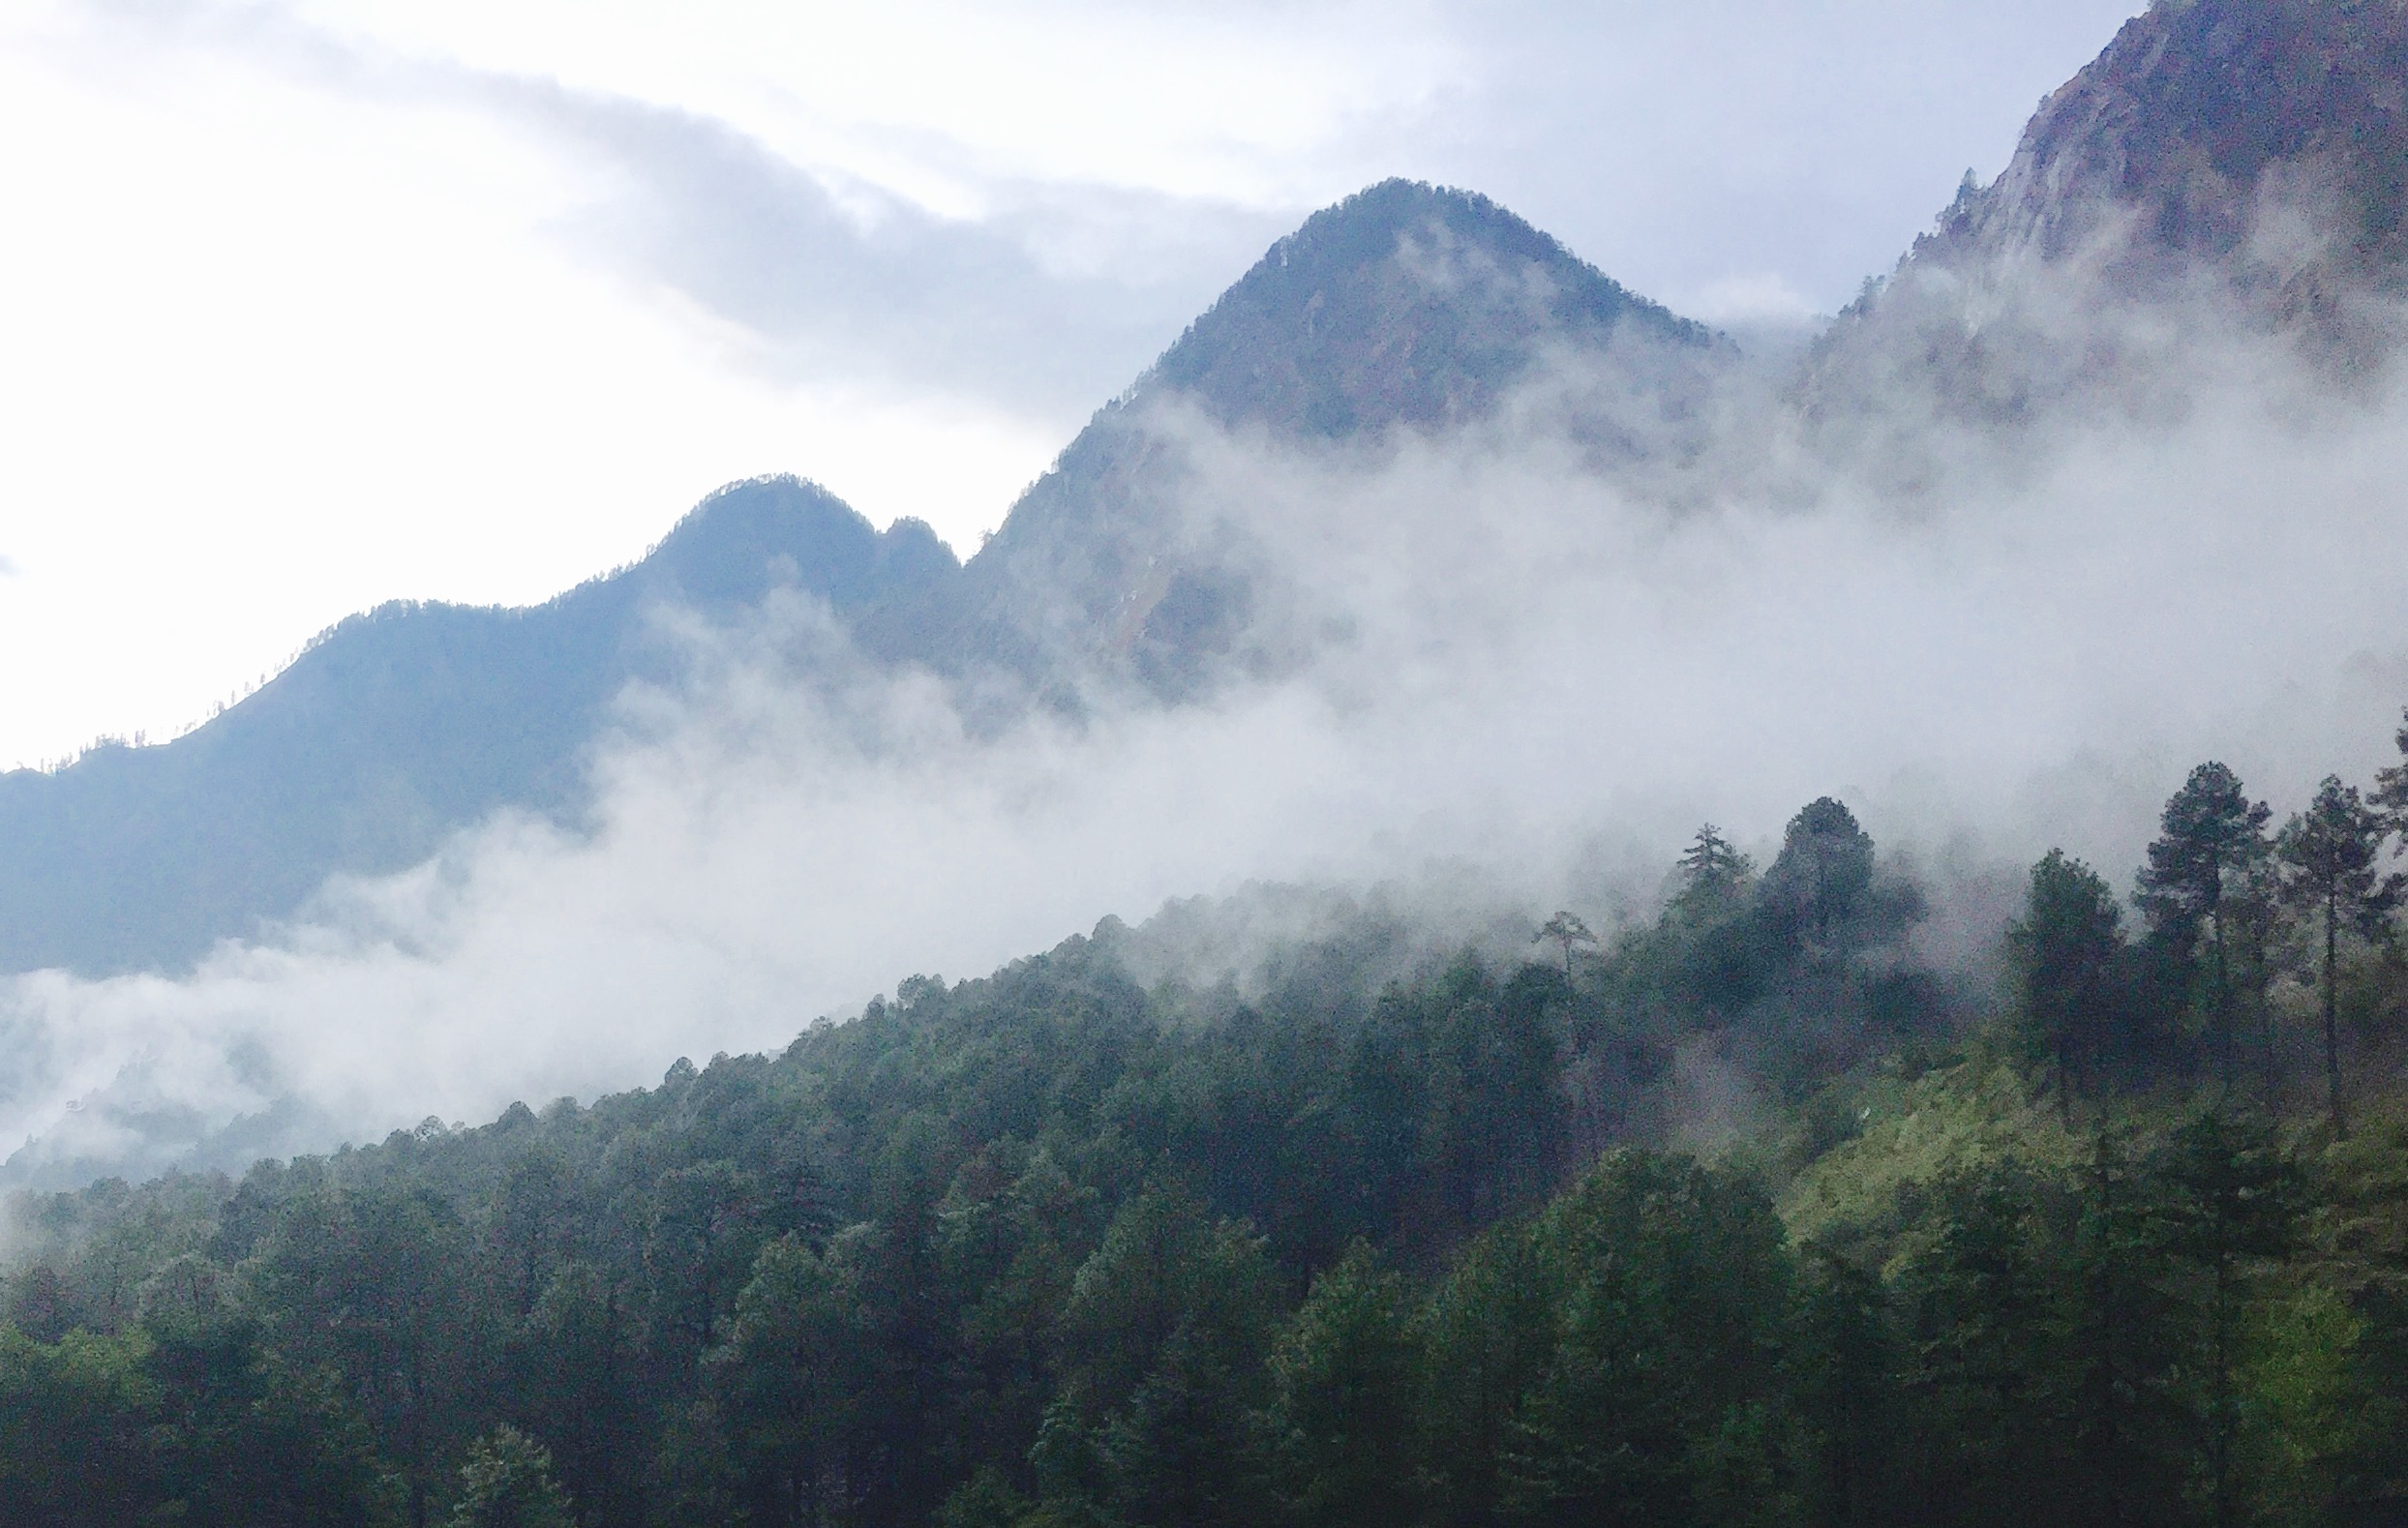 The morning mist on Parvati valley 